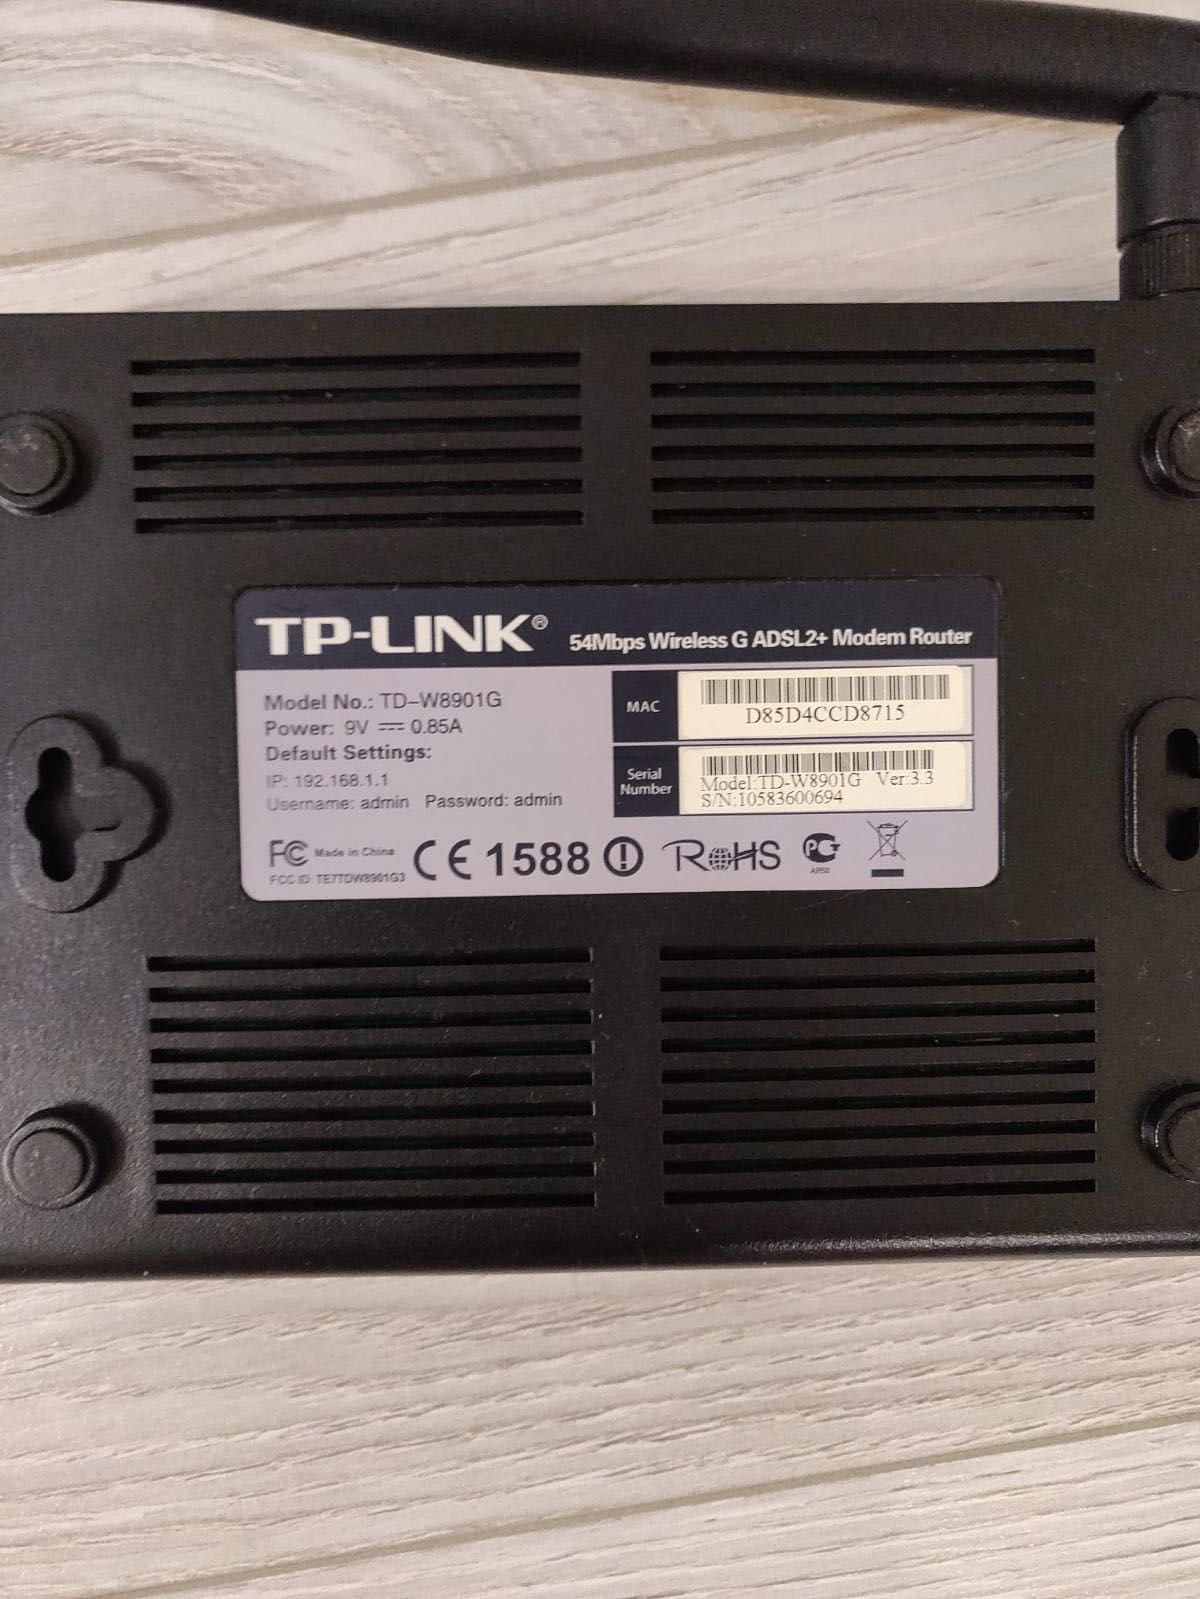 Модем TP-LINK модель TD-W8901G